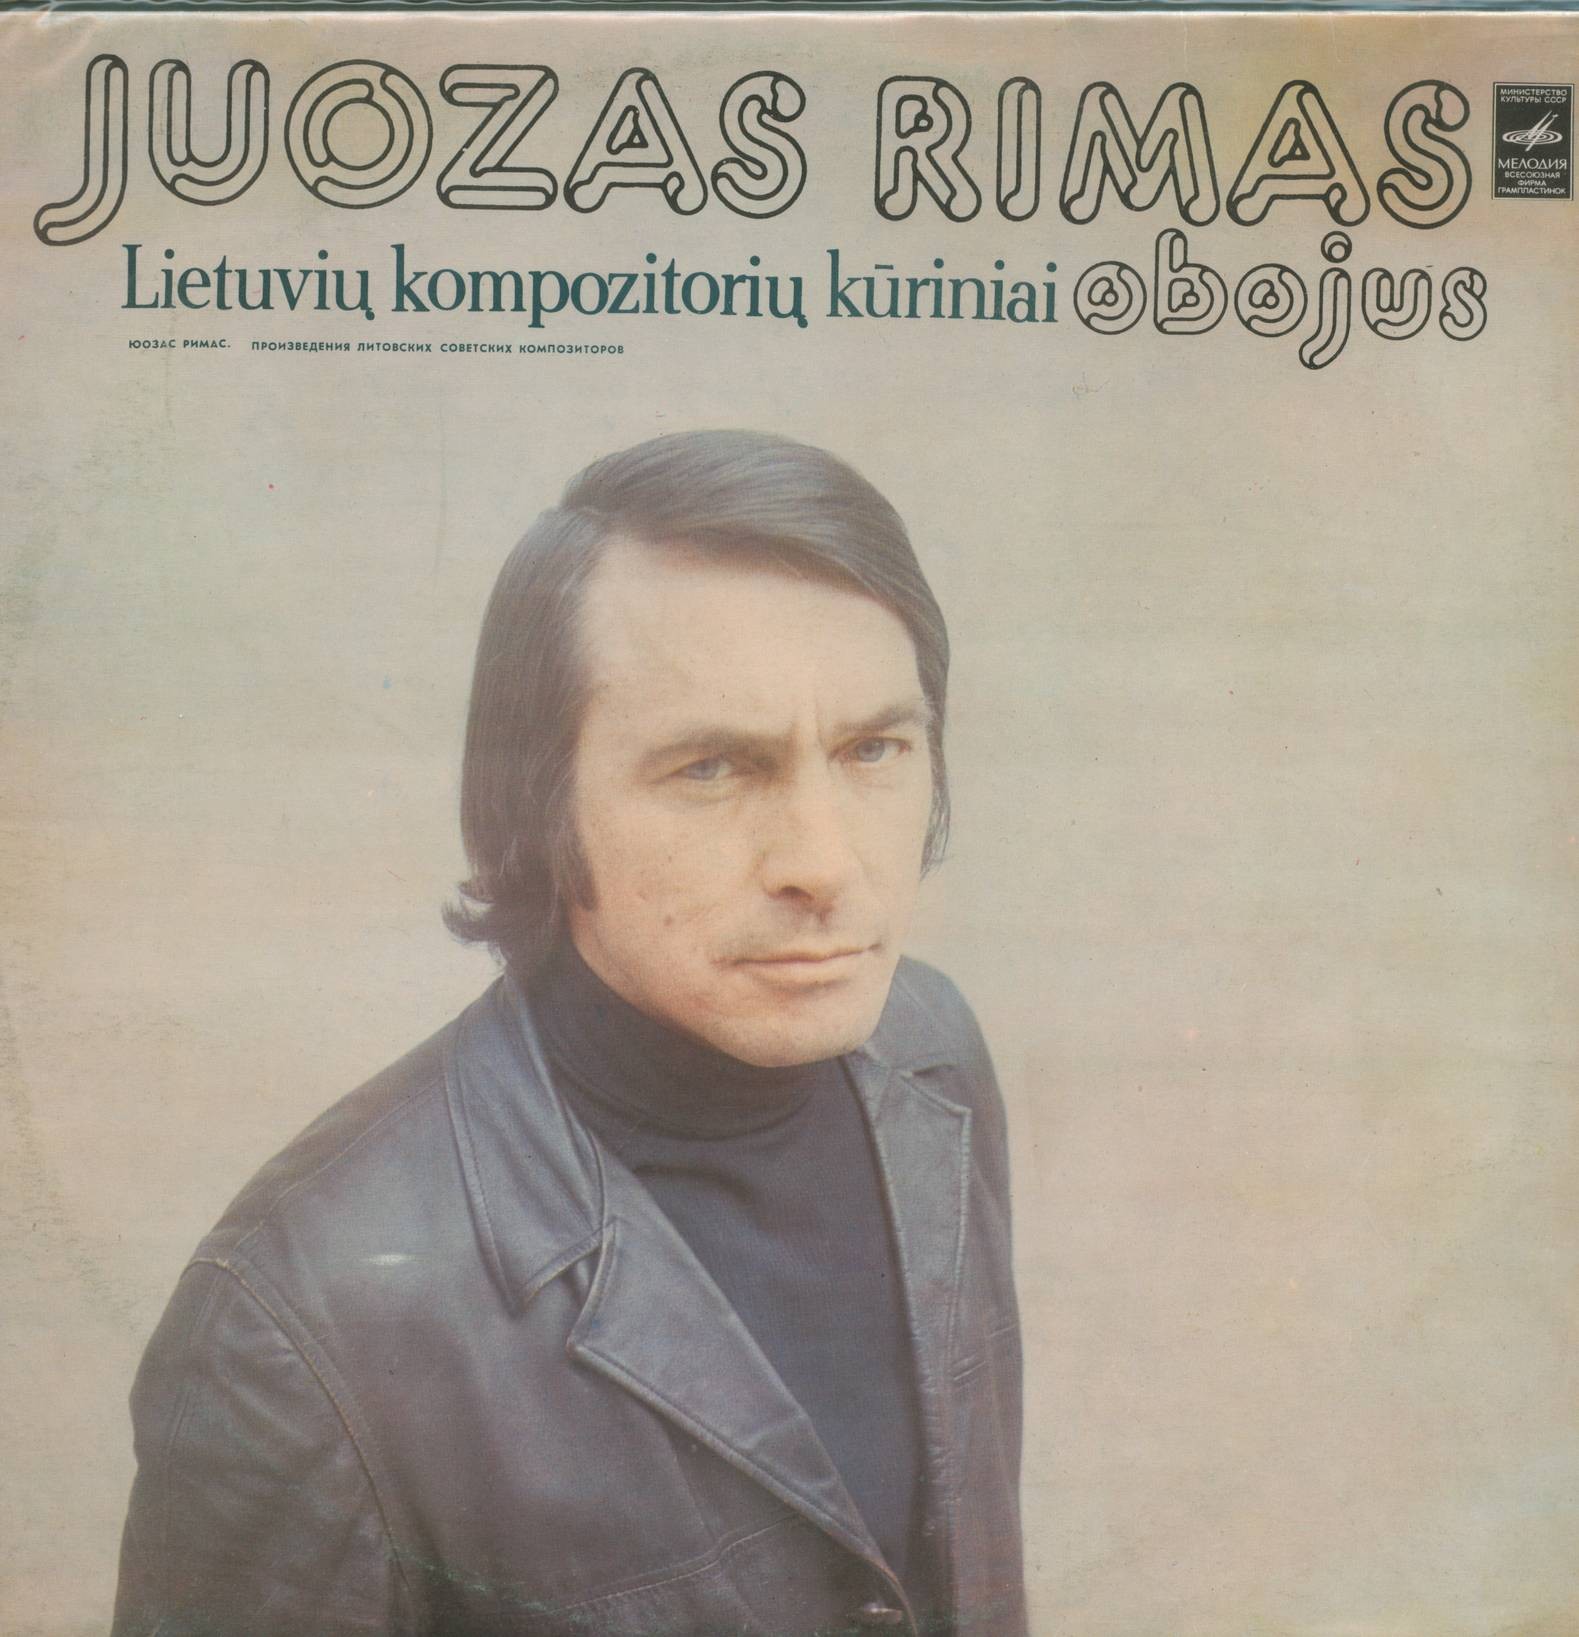 Юозас РИМАС  (гобой). Произведения литовских советских композиторов